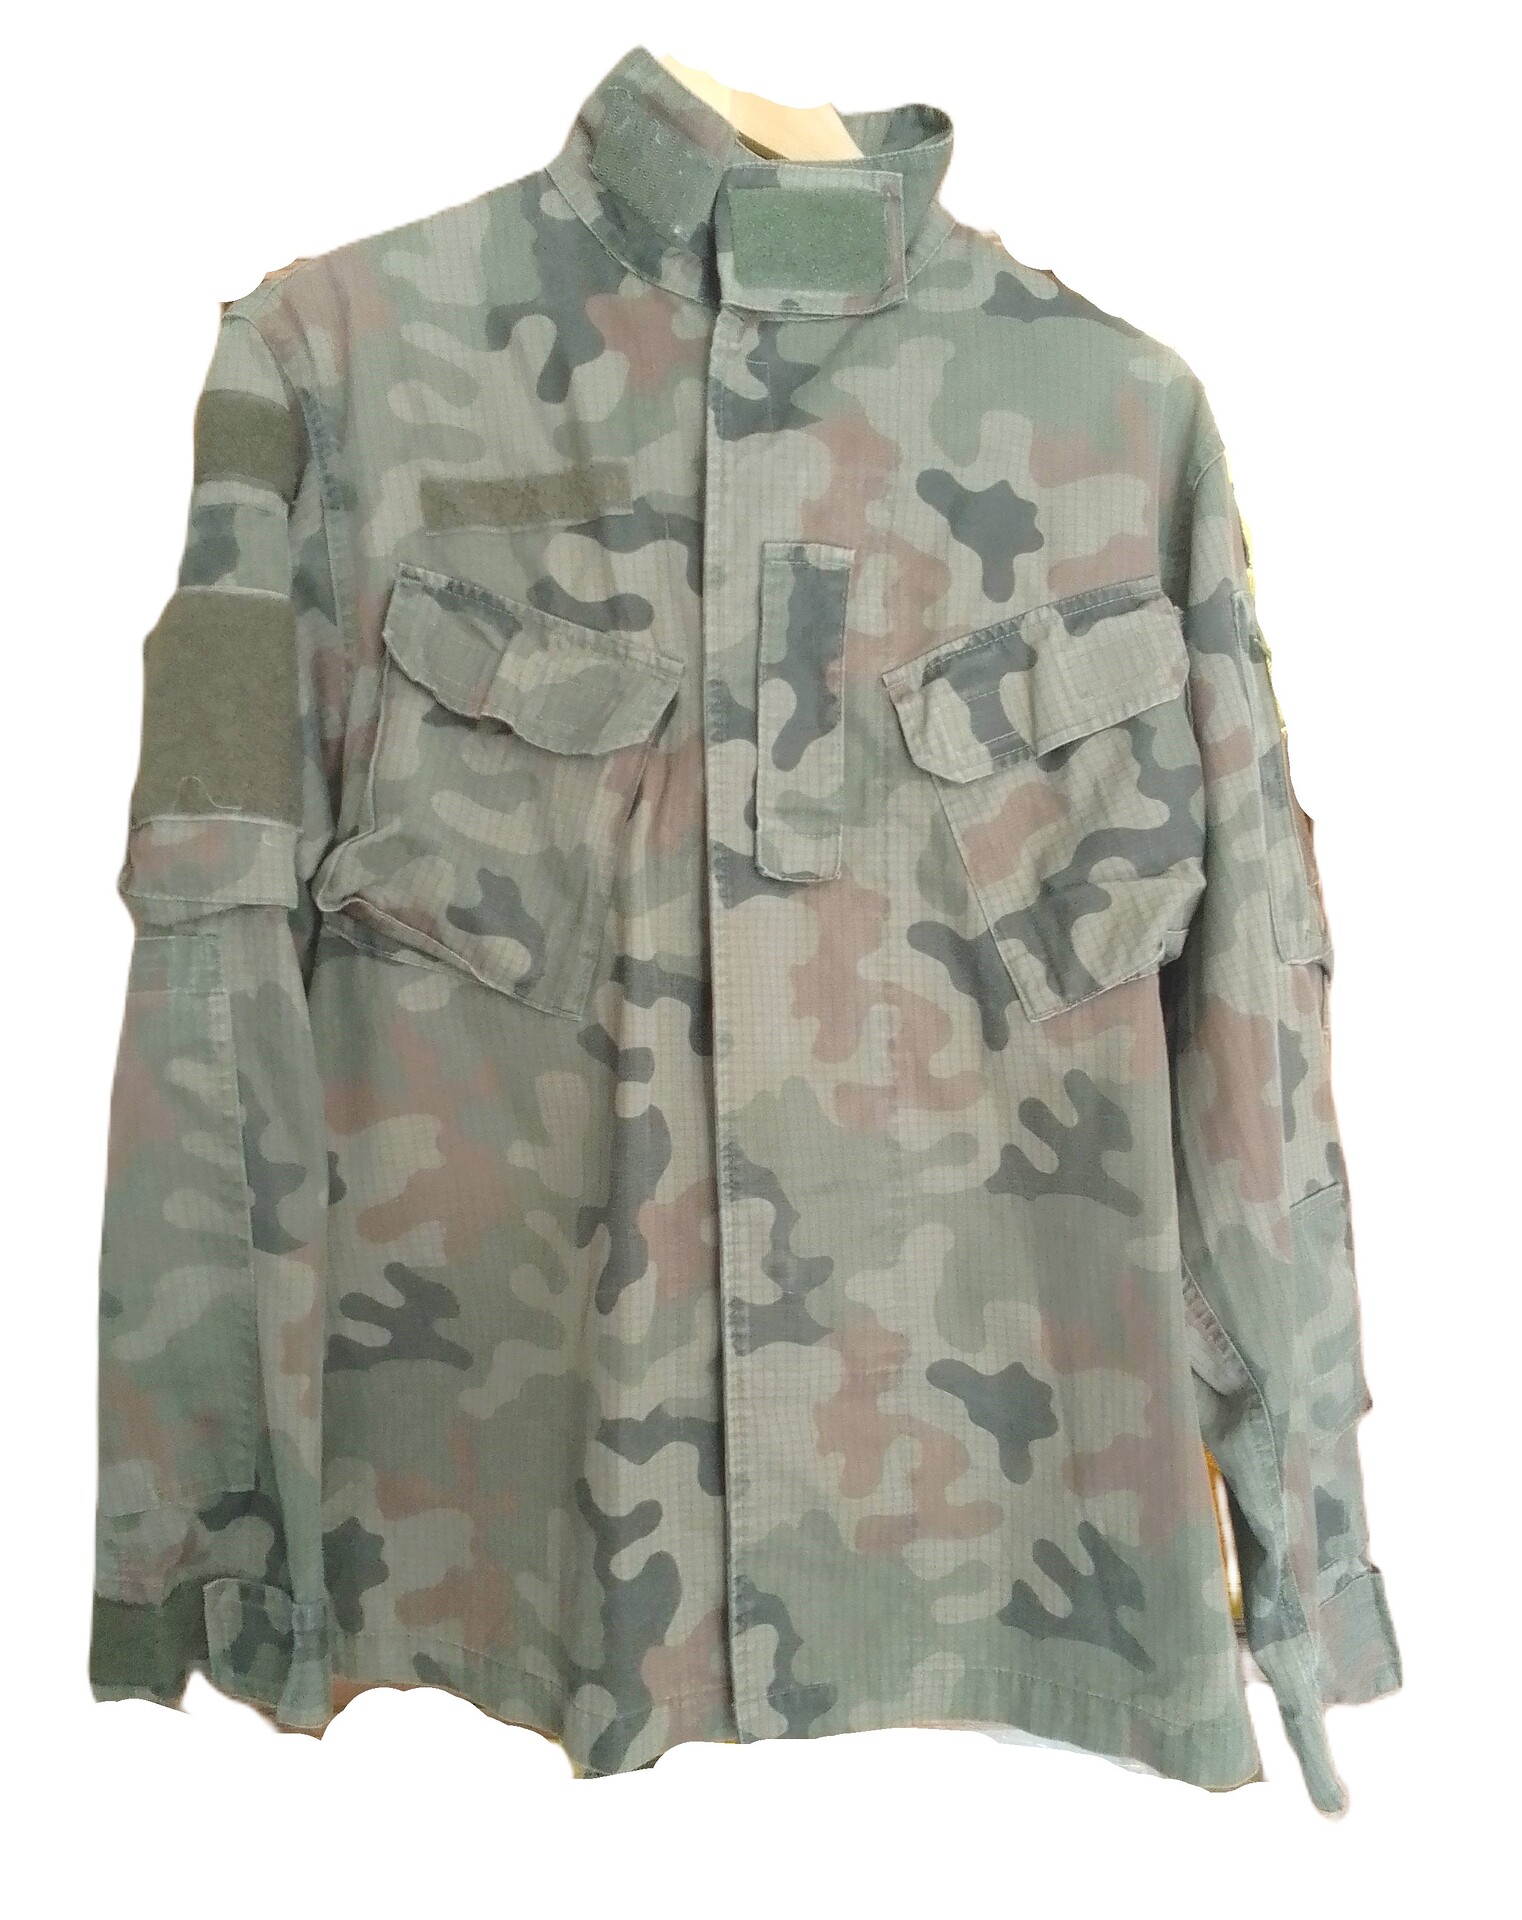 Komplet mundurowy Wz.2010 - M/R - używany/sprany